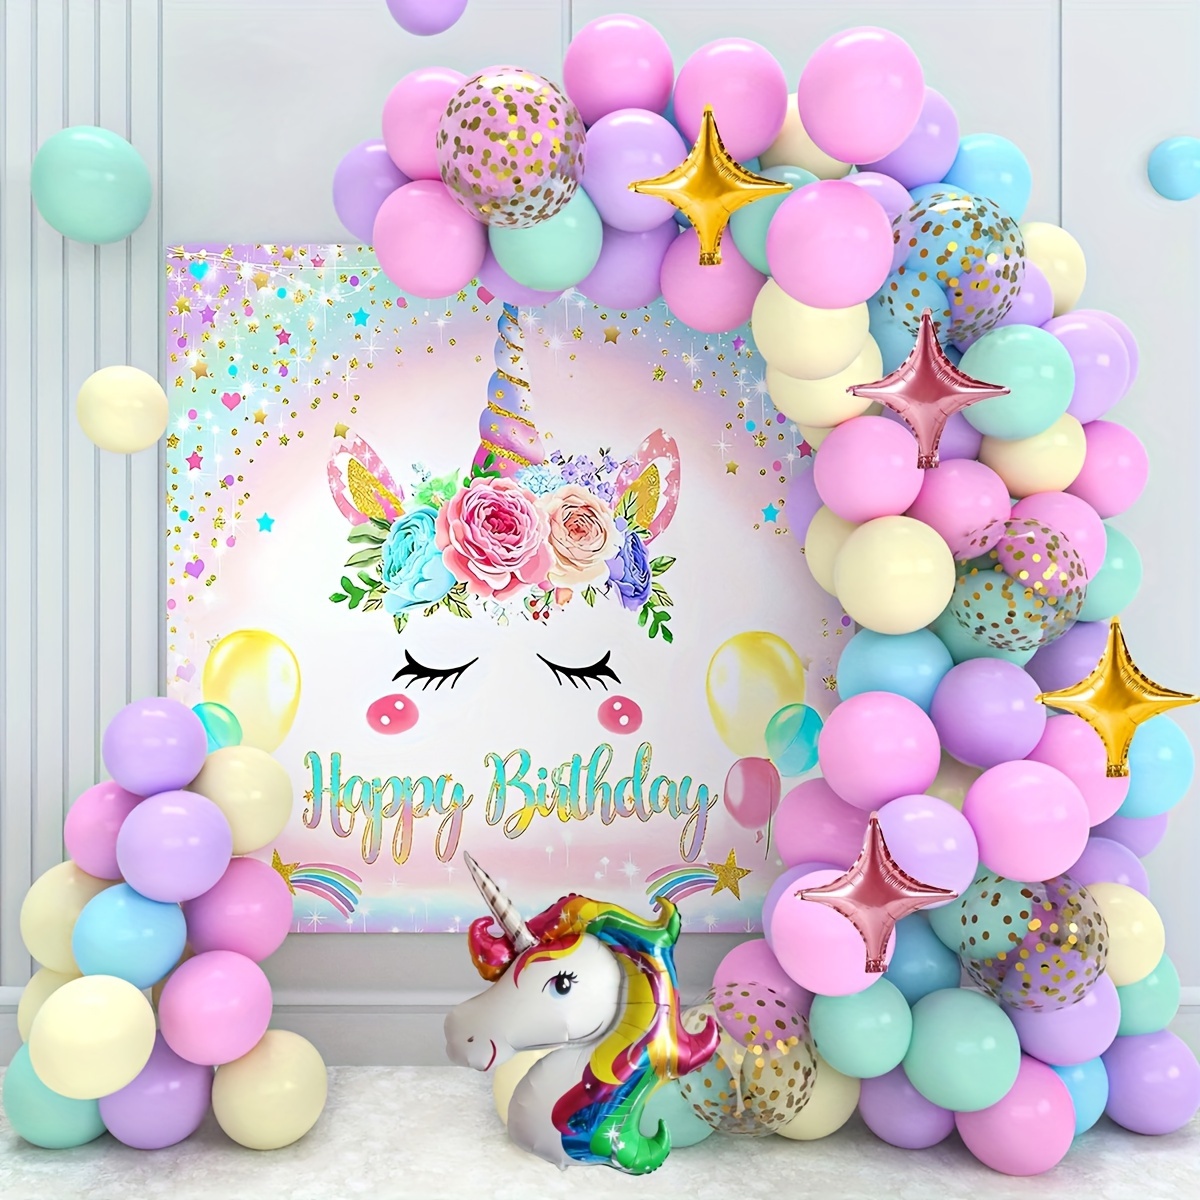 decoration anniversaire licorne ballons arche de ballons arc en ciel   Decoration anniversaire licorne, Anniversaire thème licorne, Décoration  anniversaire